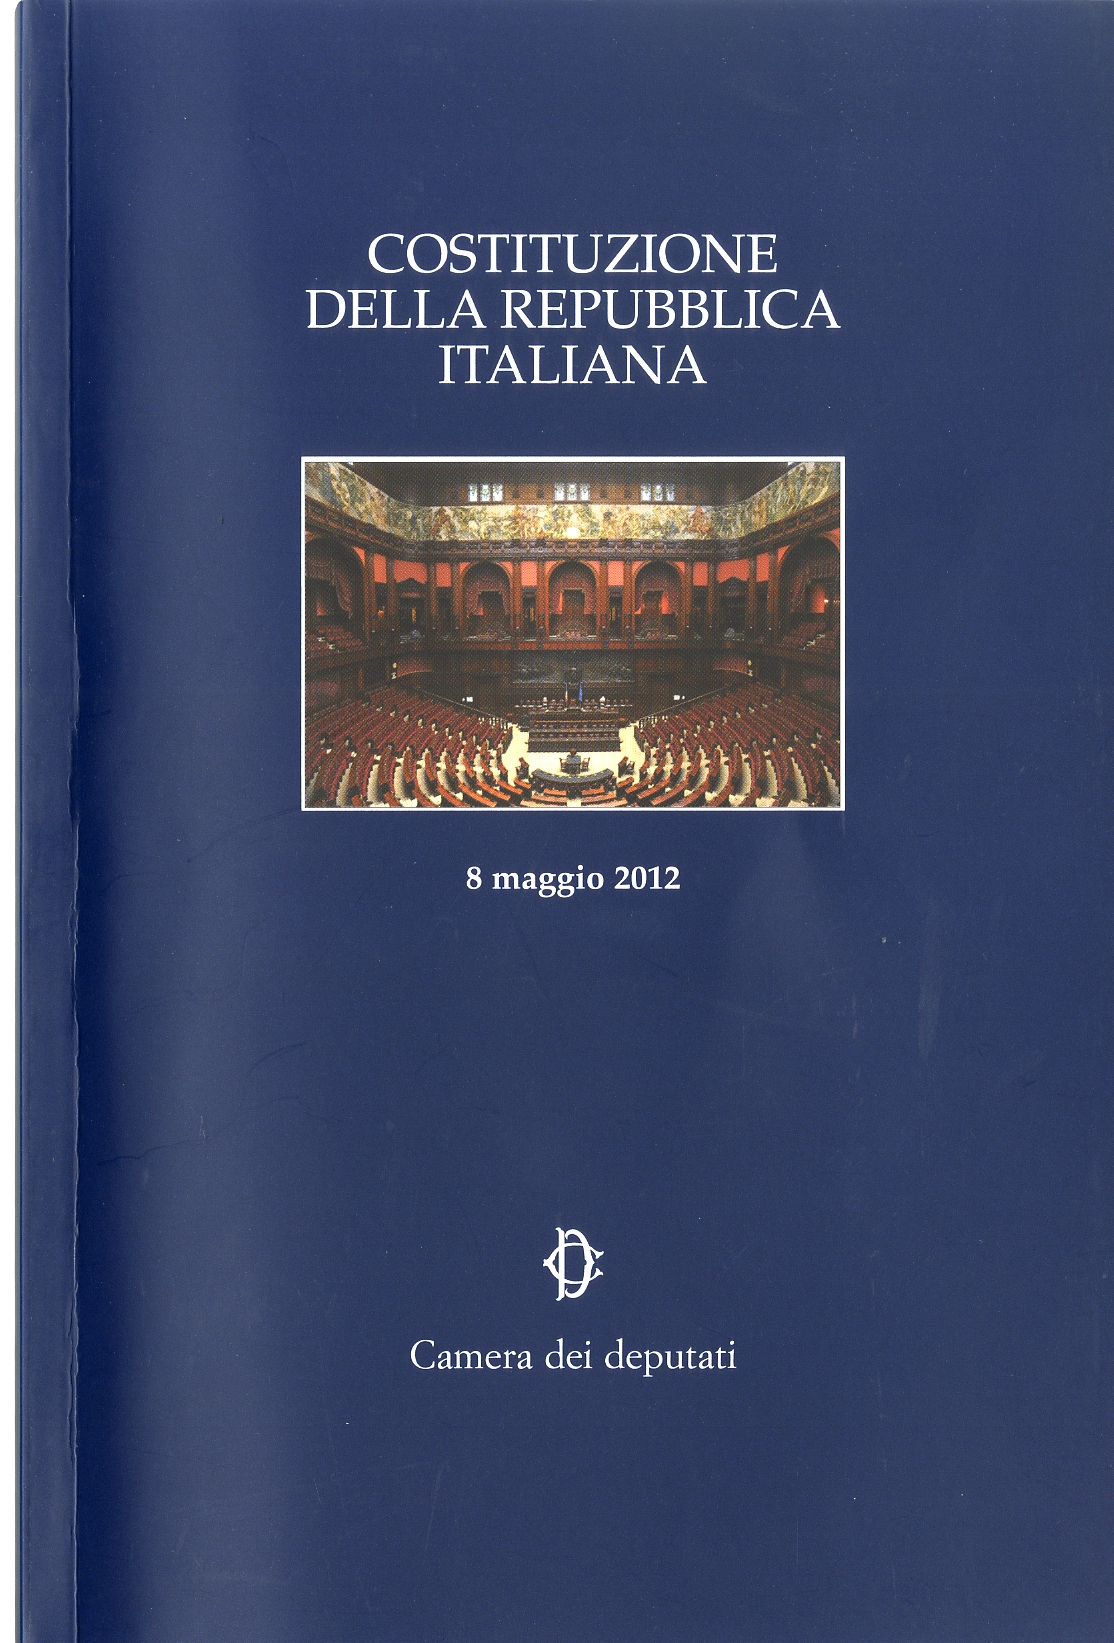 Costituzione della repubblica italiana revolution for Sito della repubblica italiana